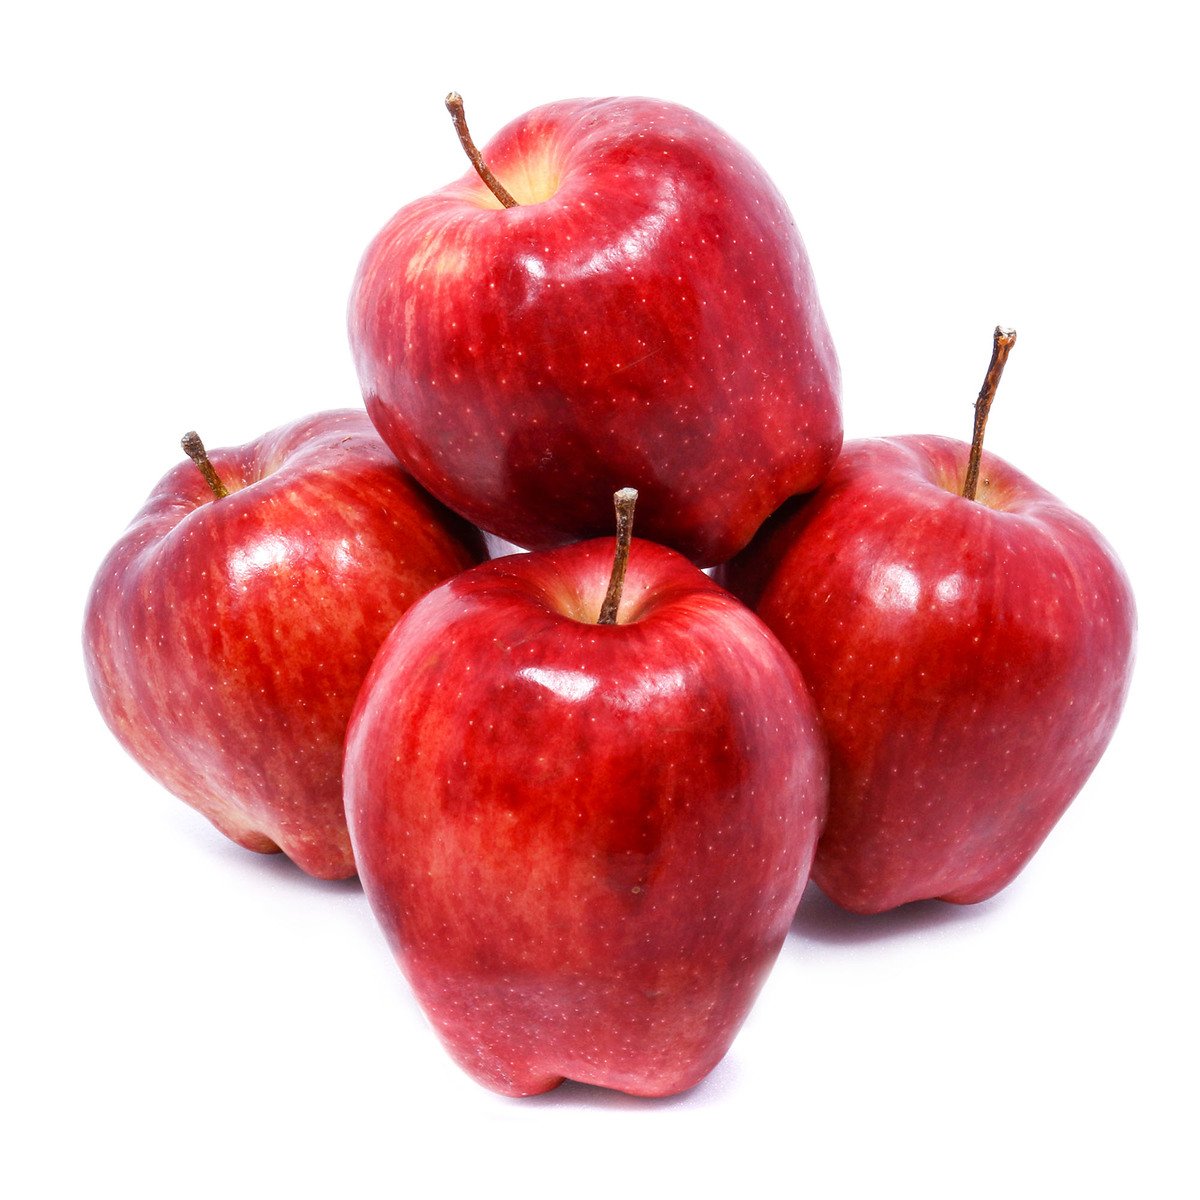 Buy Apple Red USA 1 kg Online at Best Price | Apples | Lulu UAE in UAE